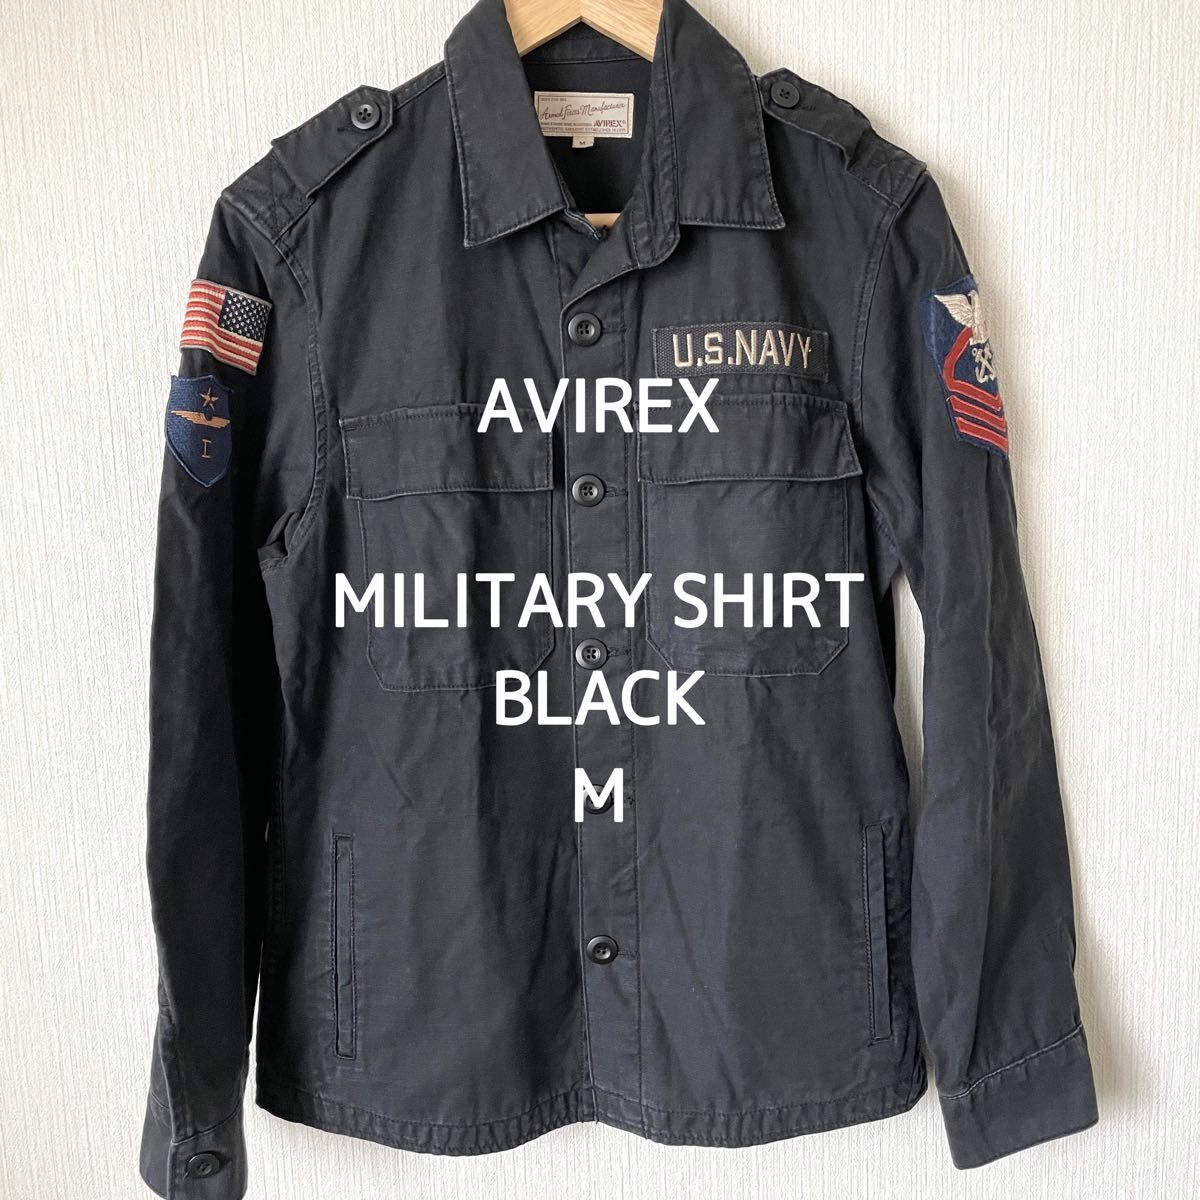 【AVIREX】アヴィレックス ミリタリーシャツジャケット 長袖 メンズ ワッペン 刺繍 黒 ブラック M